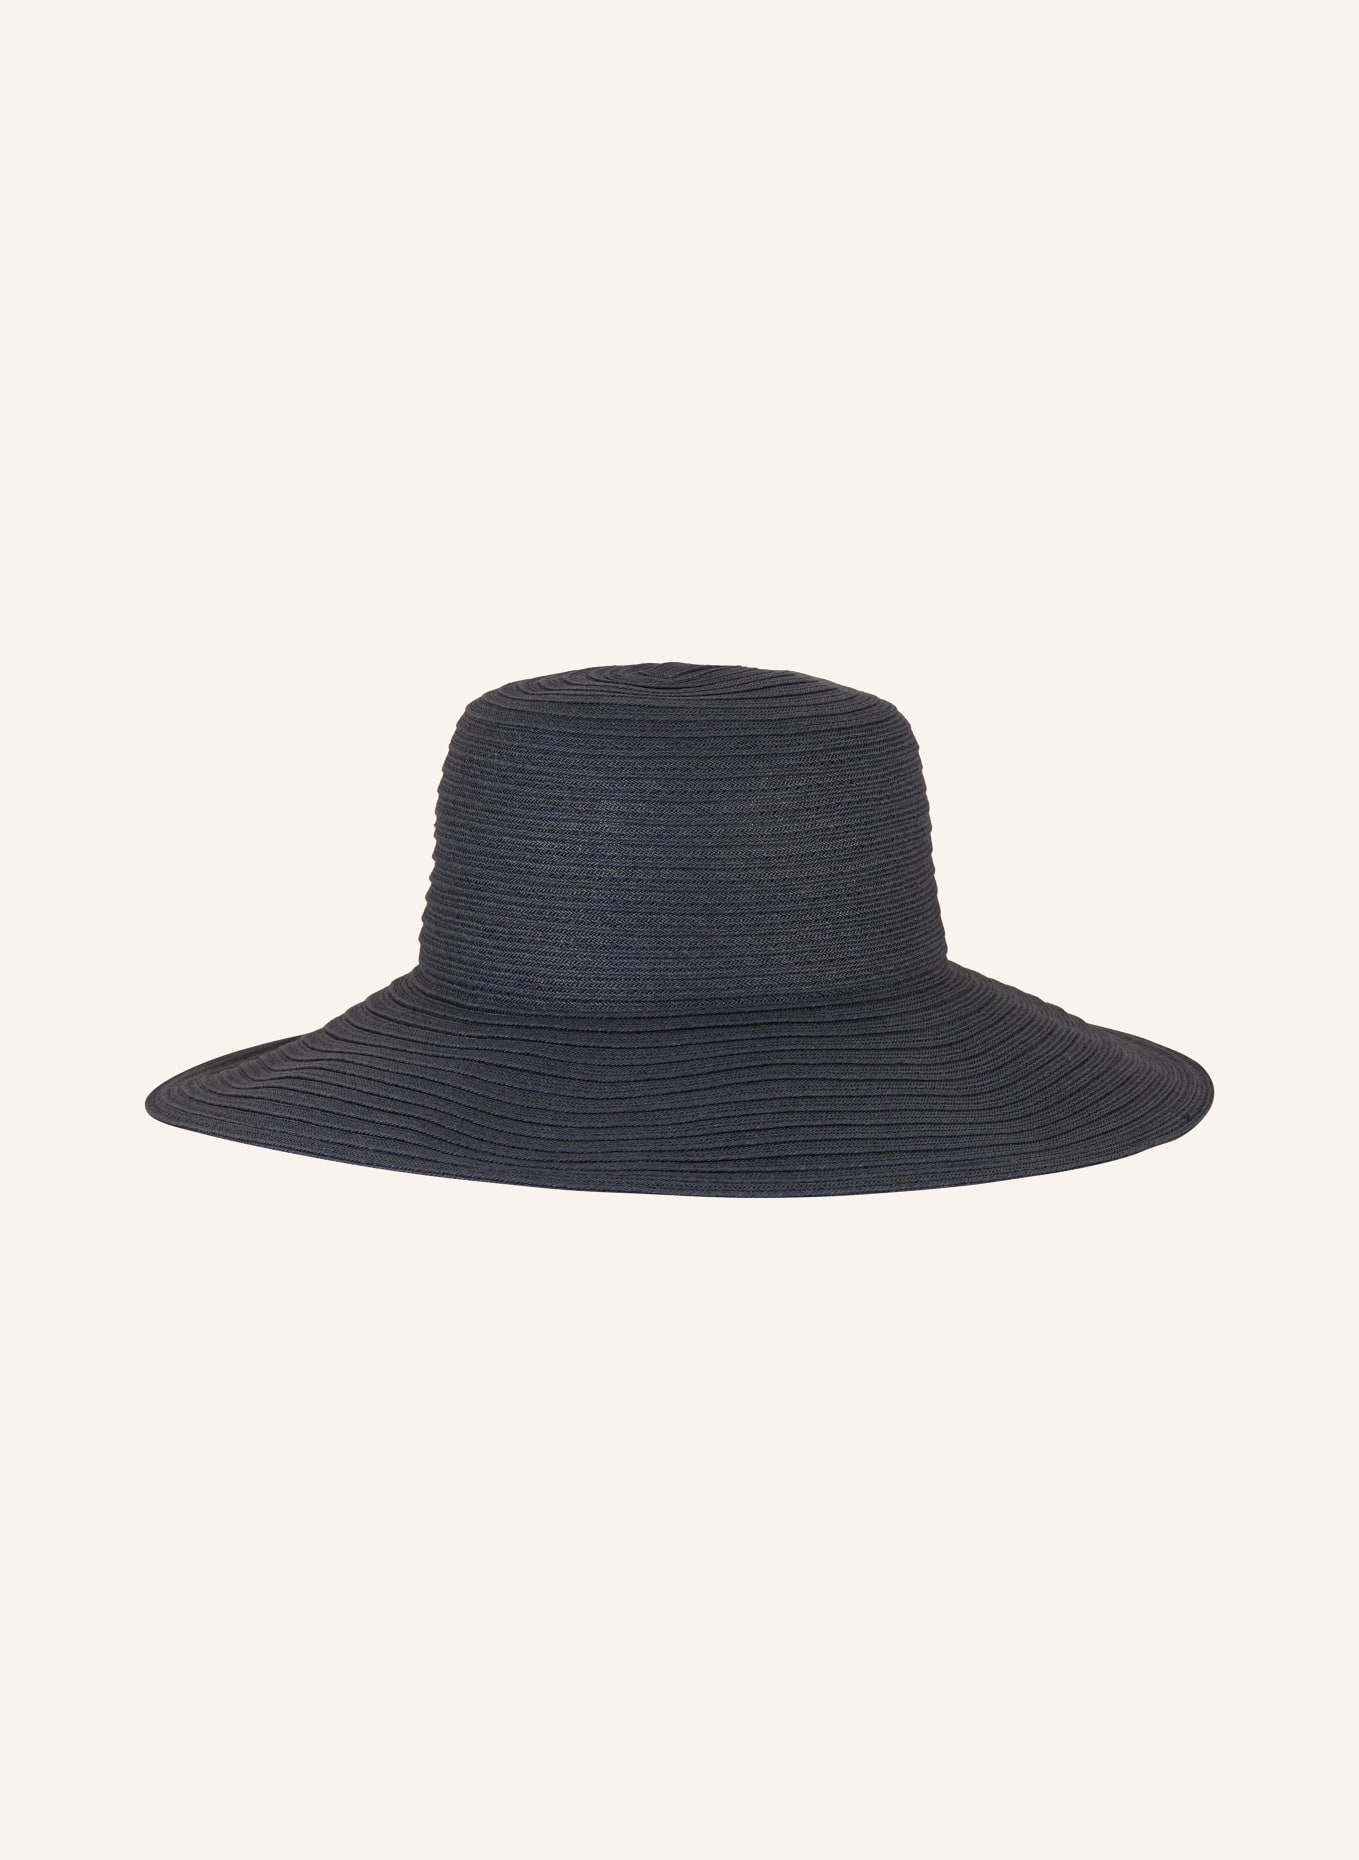 SEEBERGER Straw hat, Color: DARK BLUE (Image 2)